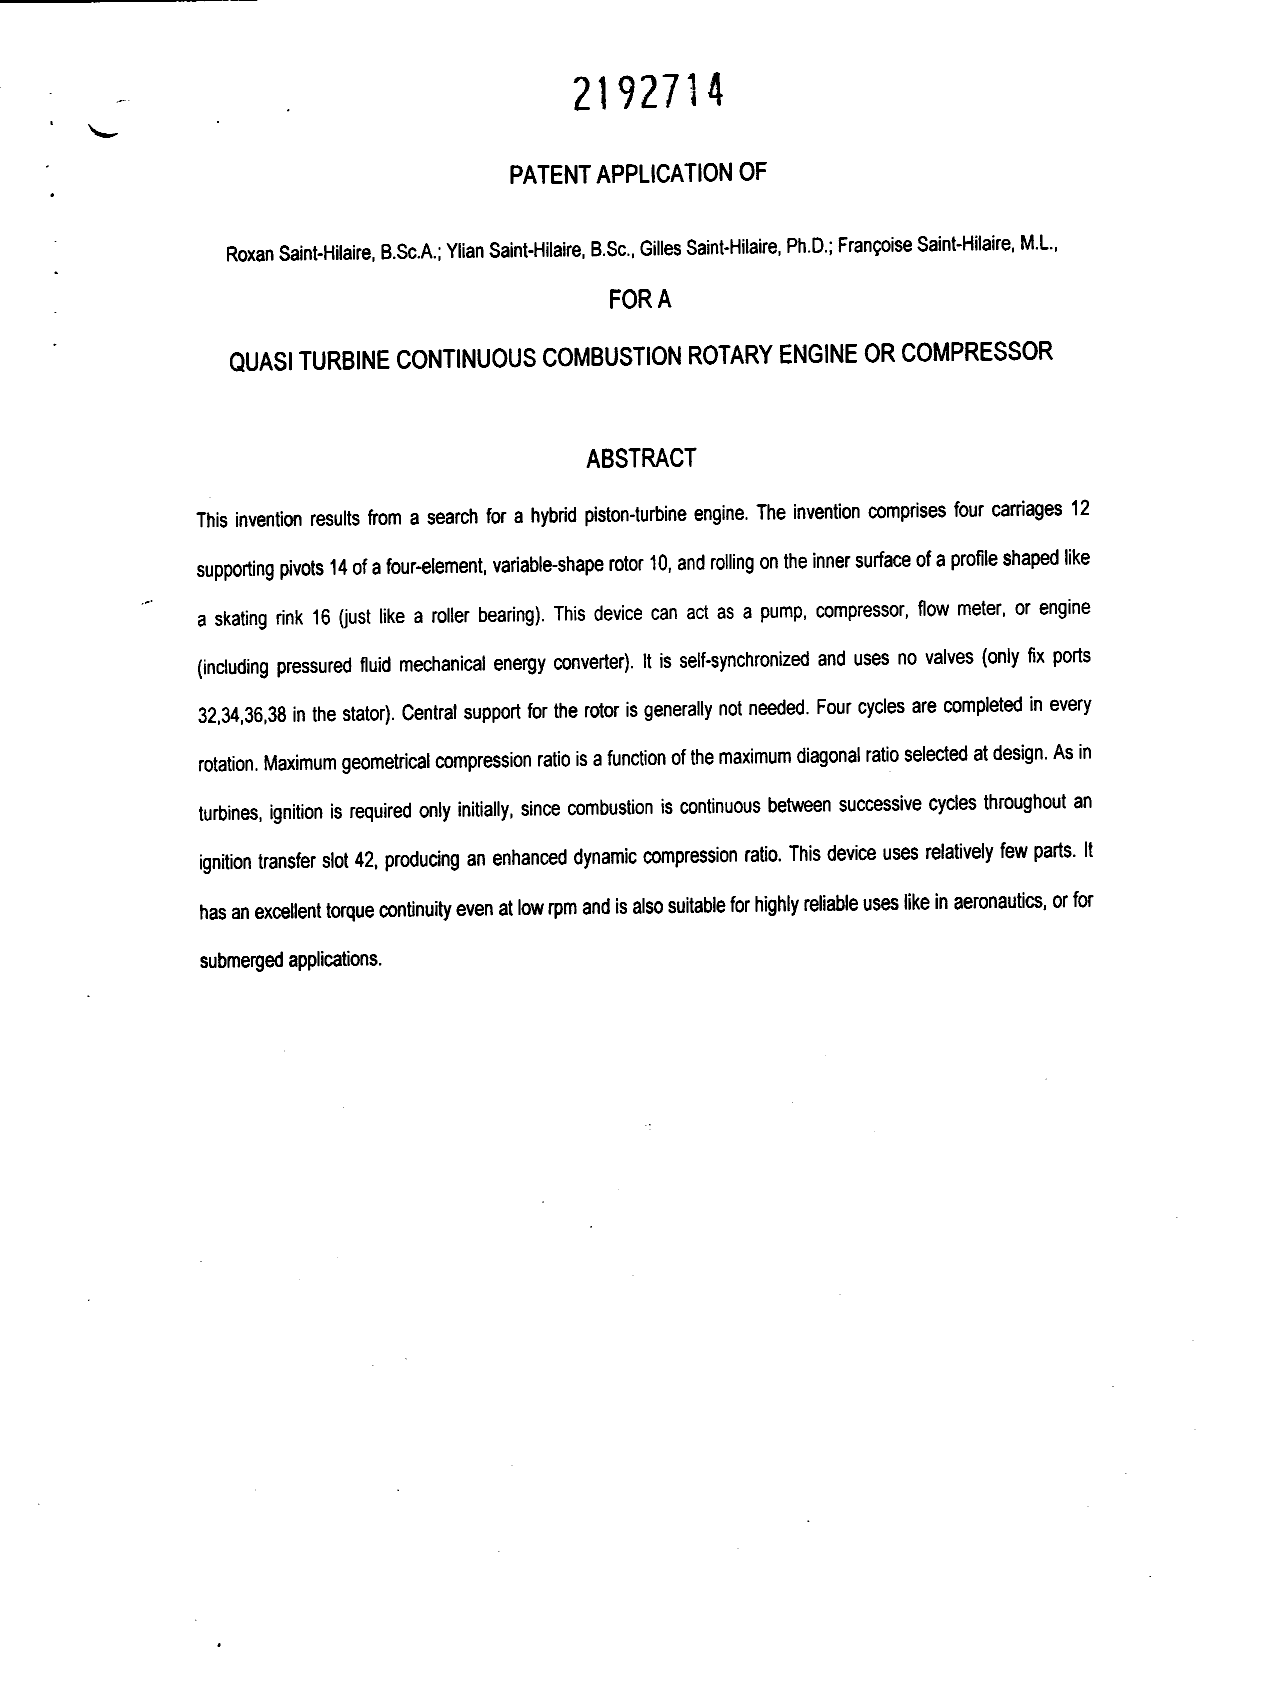 Document de brevet canadien 2192714. Abrégé 19961217. Image 1 de 1